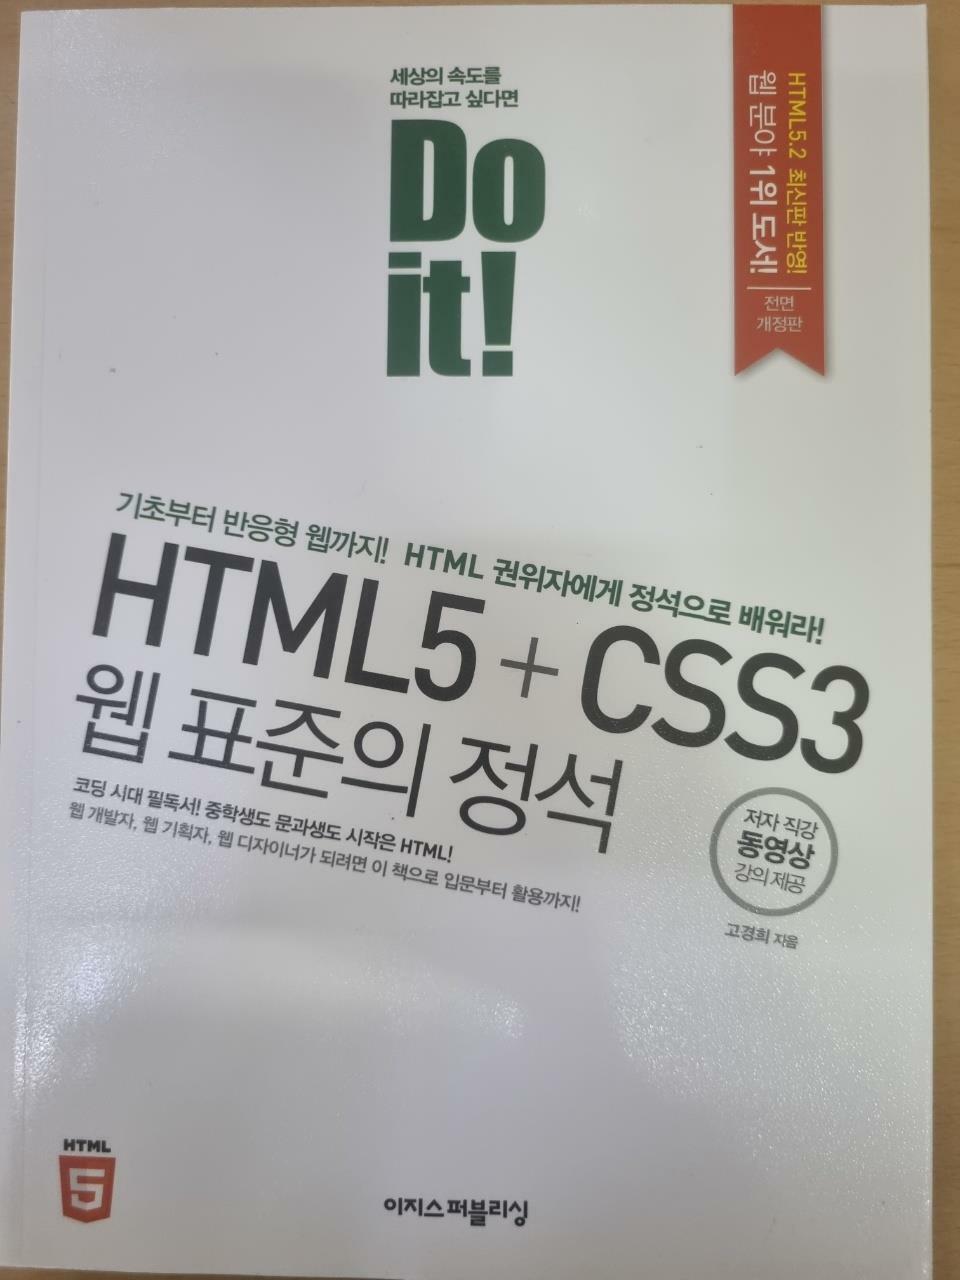 [중고] Do it! HTML5 + CSS3 웹 표준의 정석